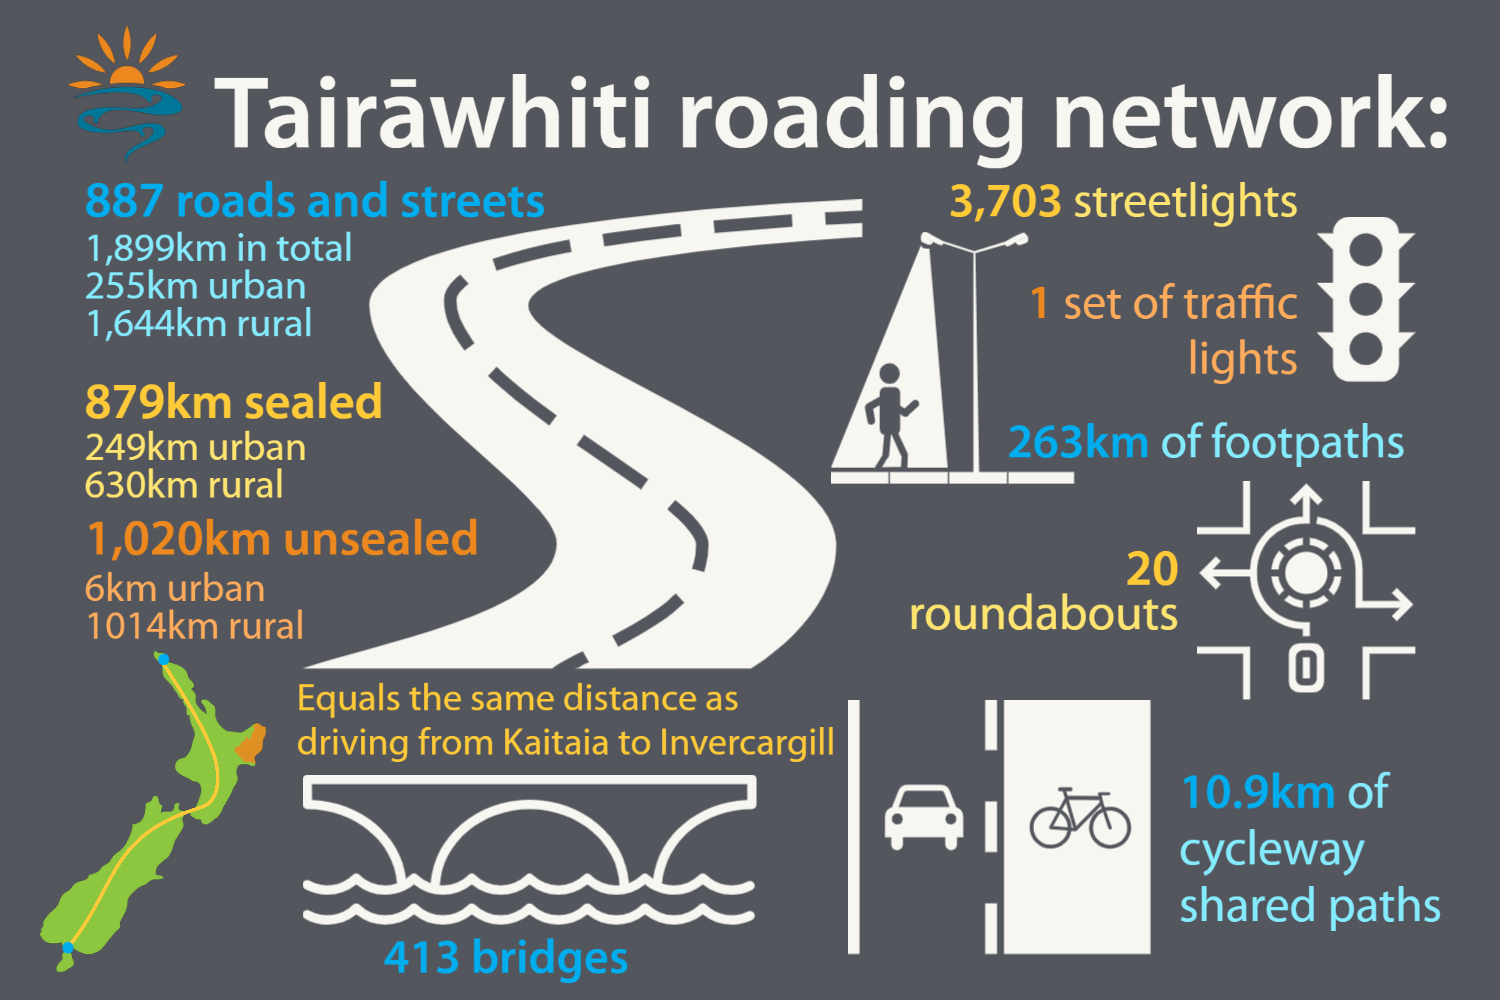 Tairawhiti road network